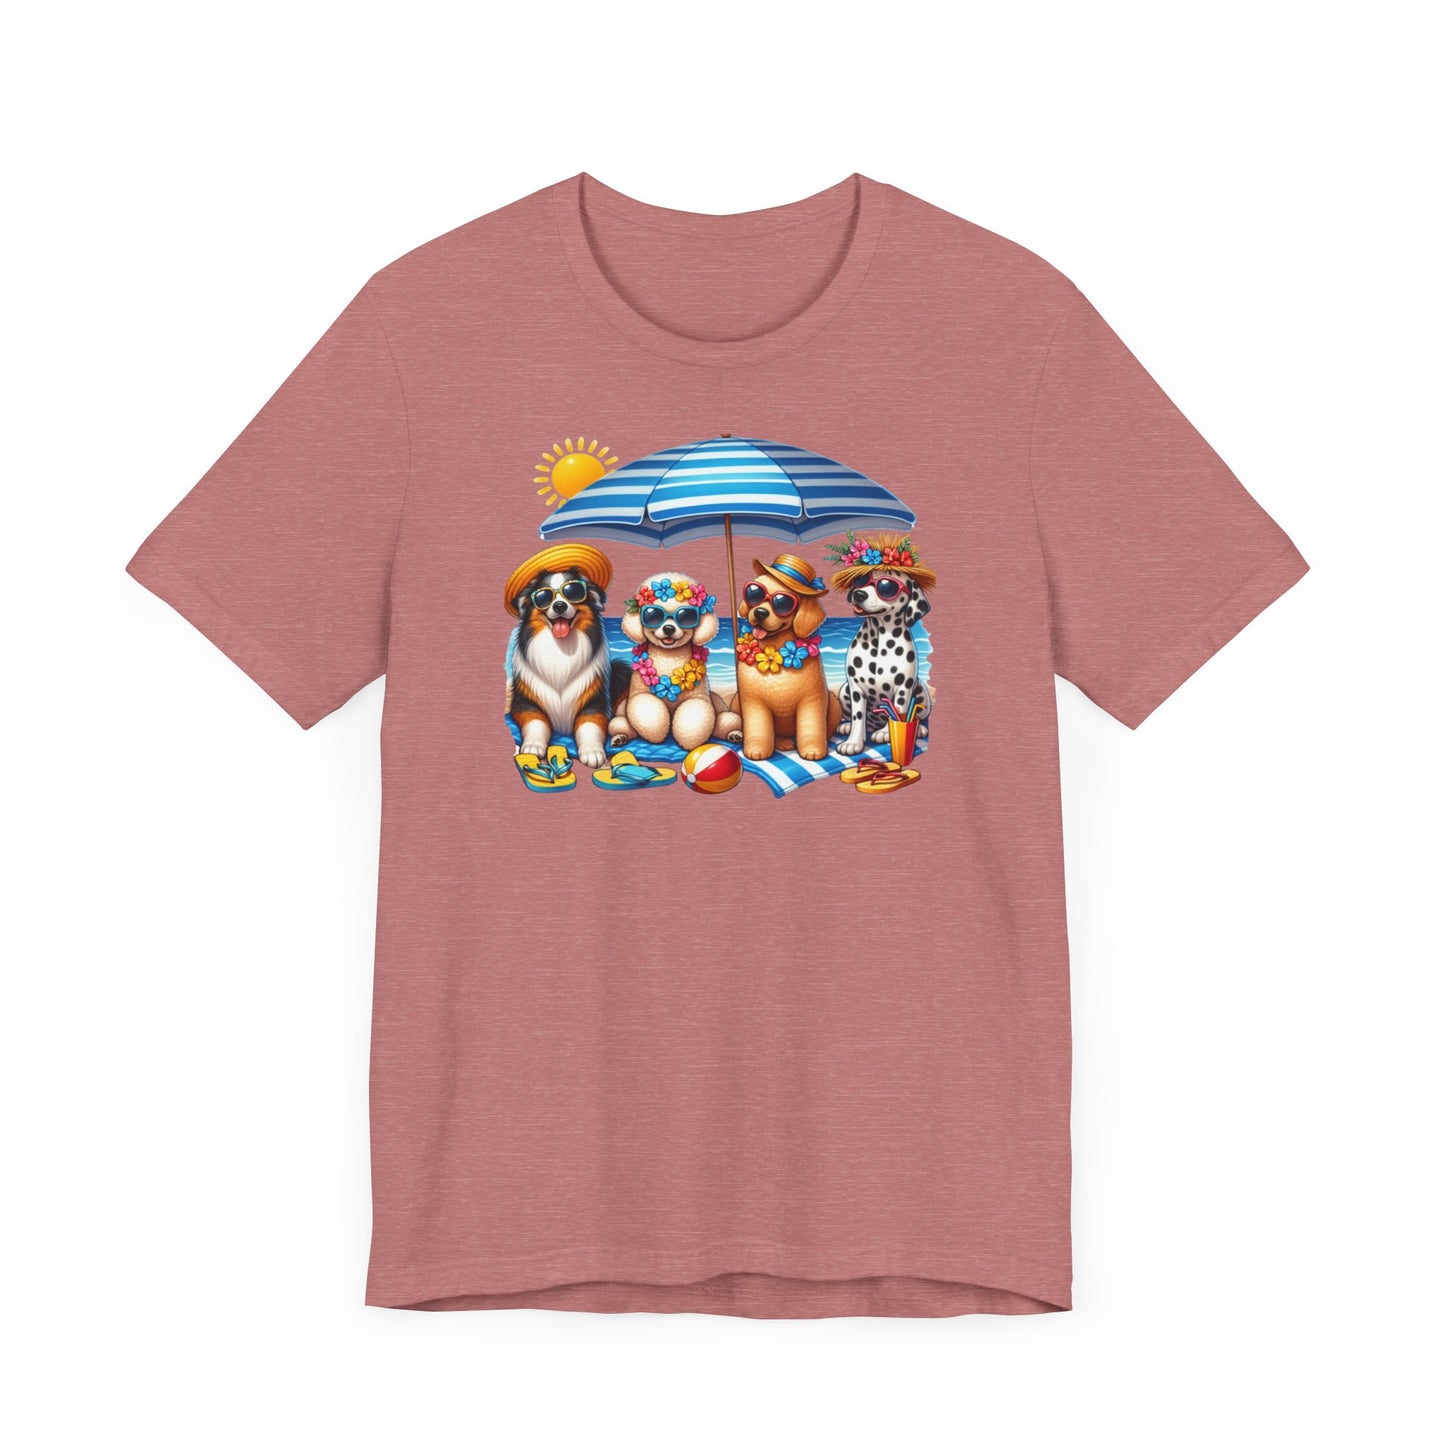 Kuscheliges Lieblings-T-Shirt: Unisex Jersey Tee mit süßen Haustiermotiven, Freizeit T-Shirt Haustier, T-Shirt mit Haustier, Kleidung